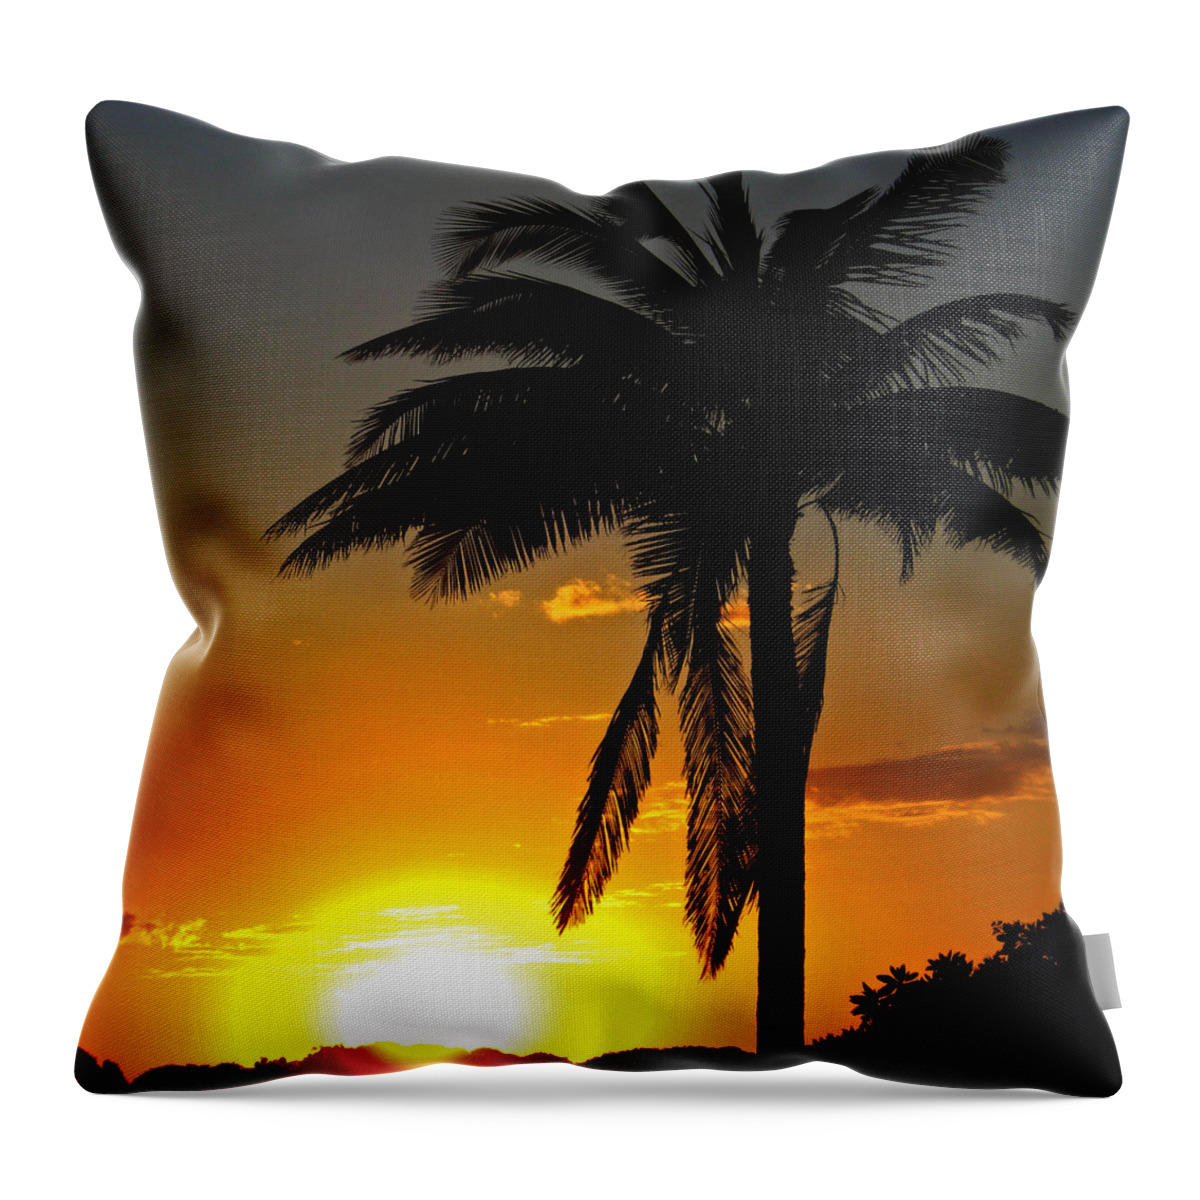 Sunset Throw Pillow featuring the photograph Sundown by Kerri Ligatich